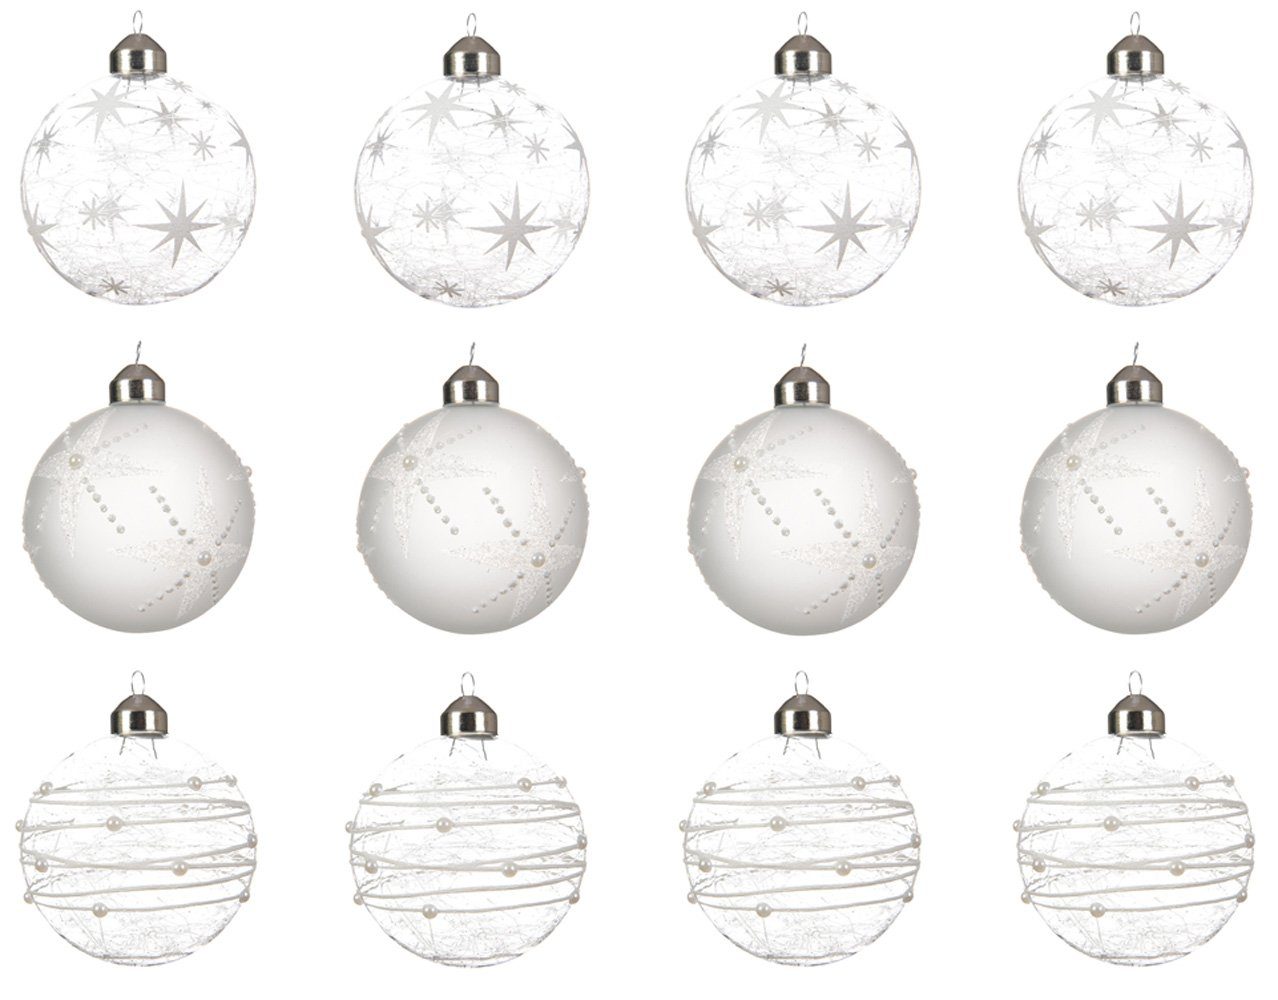 Decoris season decorations Weihnachtsbaumkugel, Weihnachtskugeln Glas Sterne Streifen 8cm weiß transparent, 12er Set